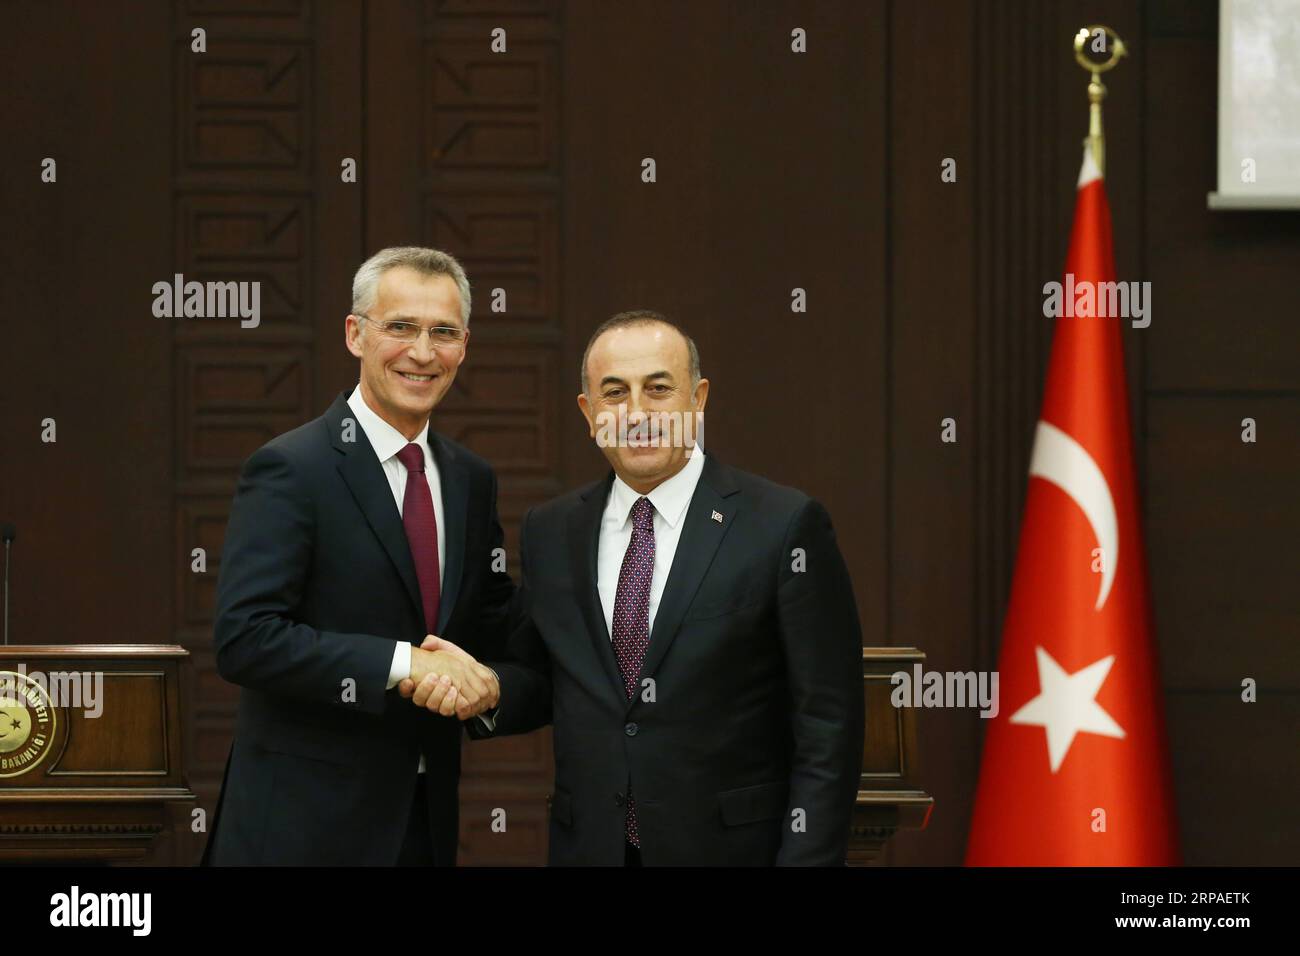 Actualités Themen der Woche KW19 (190507) -- ANKARA, le 7 mai 2019 -- le secrétaire général de l'OTAN, Jens Stoltenberg (à gauche), et le ministre turc des Affaires étrangères, Mevlut Cavusoglu, assistent à une conférence de presse à Ankara, en Turquie, le 6 mai 2019. Le secrétaire général de l'OTAN, Jens Stoltenberg, a déclaré lundi qu'il était préoccupé par les plans de la Turquie de déployer le système russe de défense antimissile S-400 malgré l'objection américaine. CONFÉRENCE DE PRESSE TURQUIE-ANKARA-OTAN MustafaxKaya PUBLICATIONxNOTxINxCHN Banque D'Images